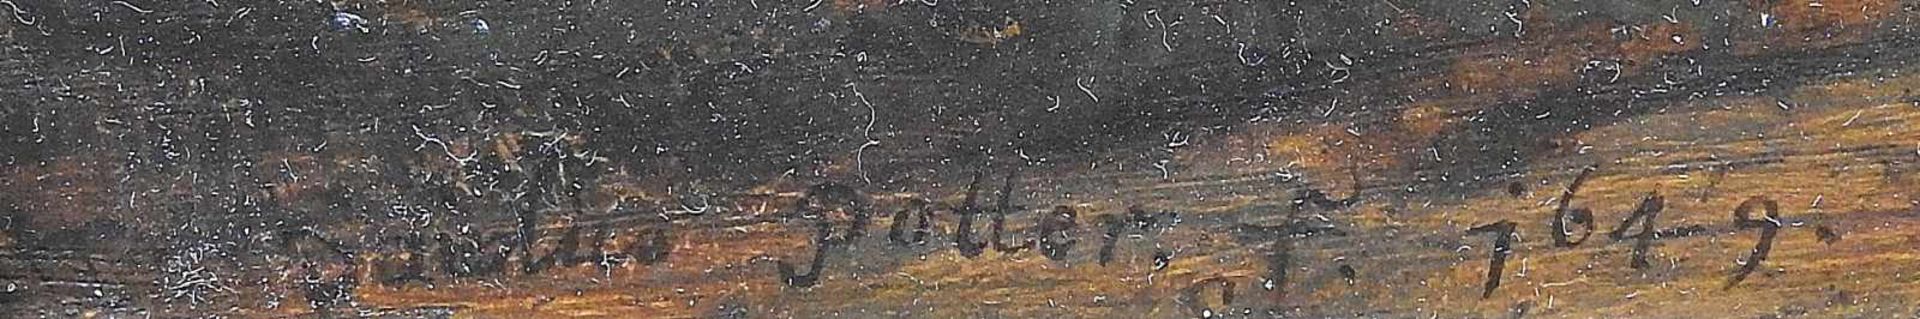 Stier und Kühe auf der WeideÖl/Holz. Kopie nach Paulus Potter. Das originale Gemälde befindet sich - Bild 3 aus 4